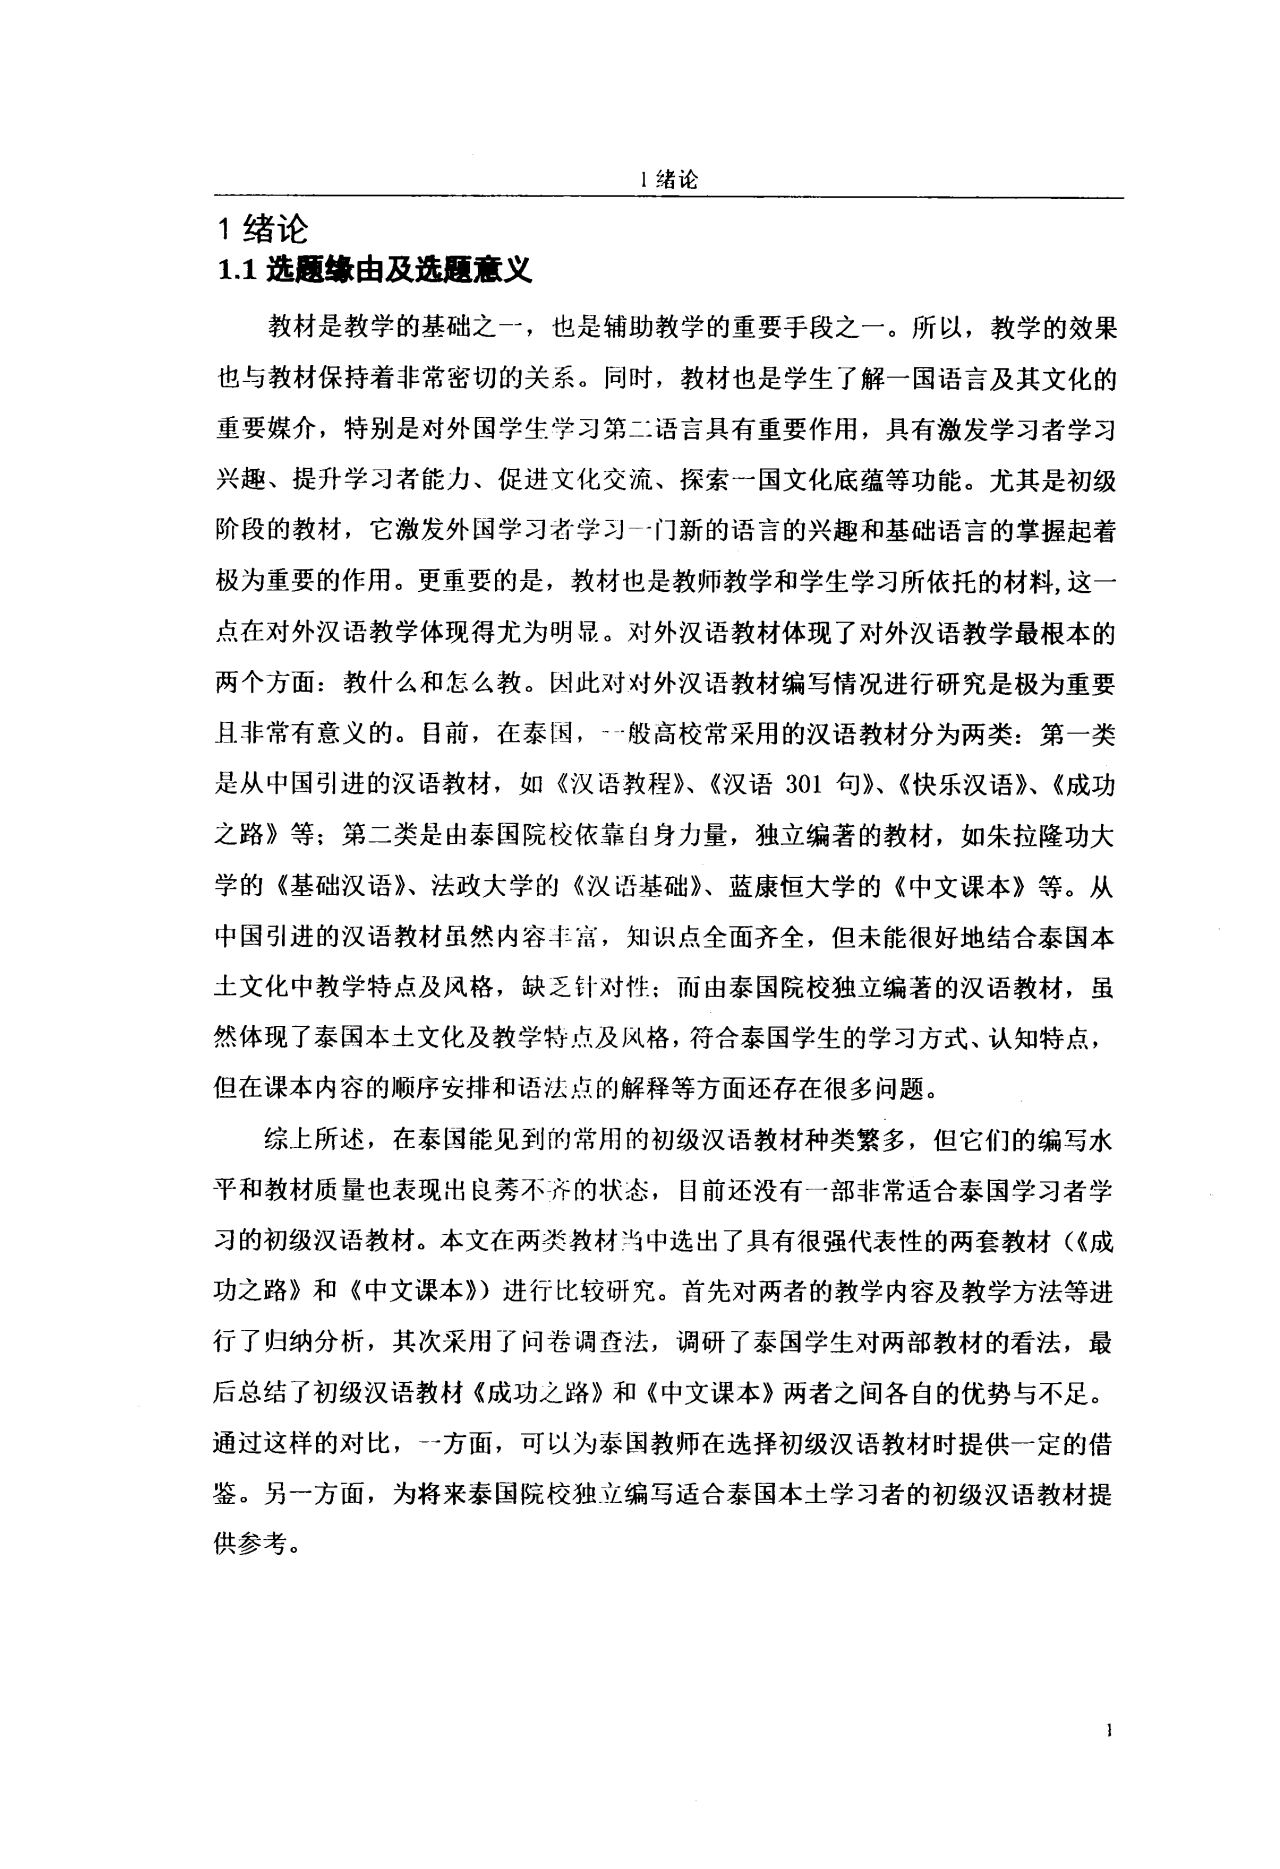 《成功之路》与《中文课本》中泰初级汉语综合教材比较研究